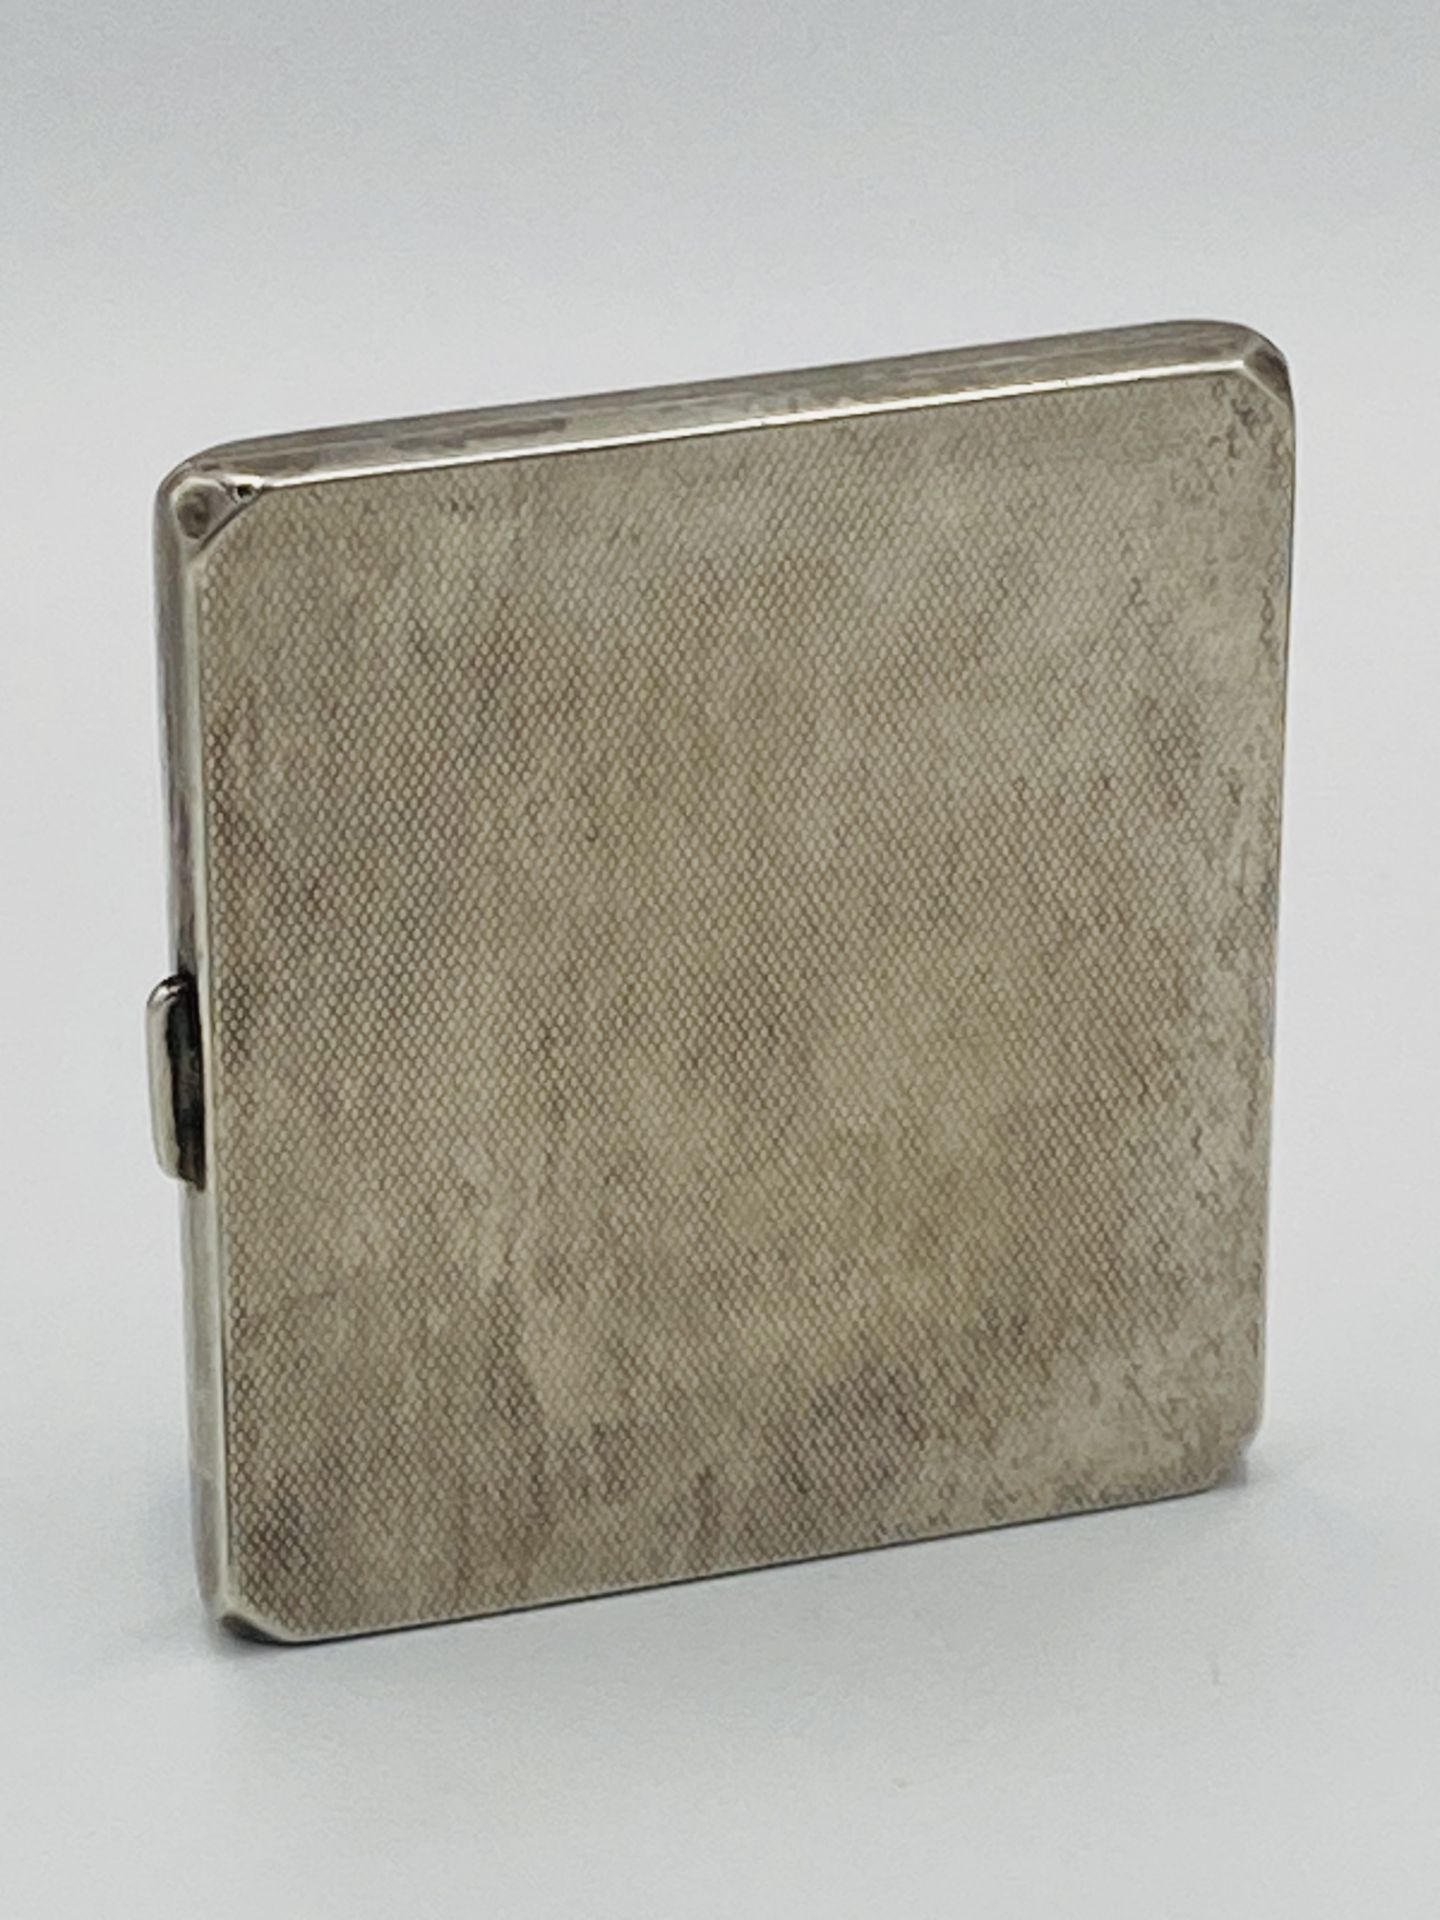 Silver cigarette case - Image 2 of 5